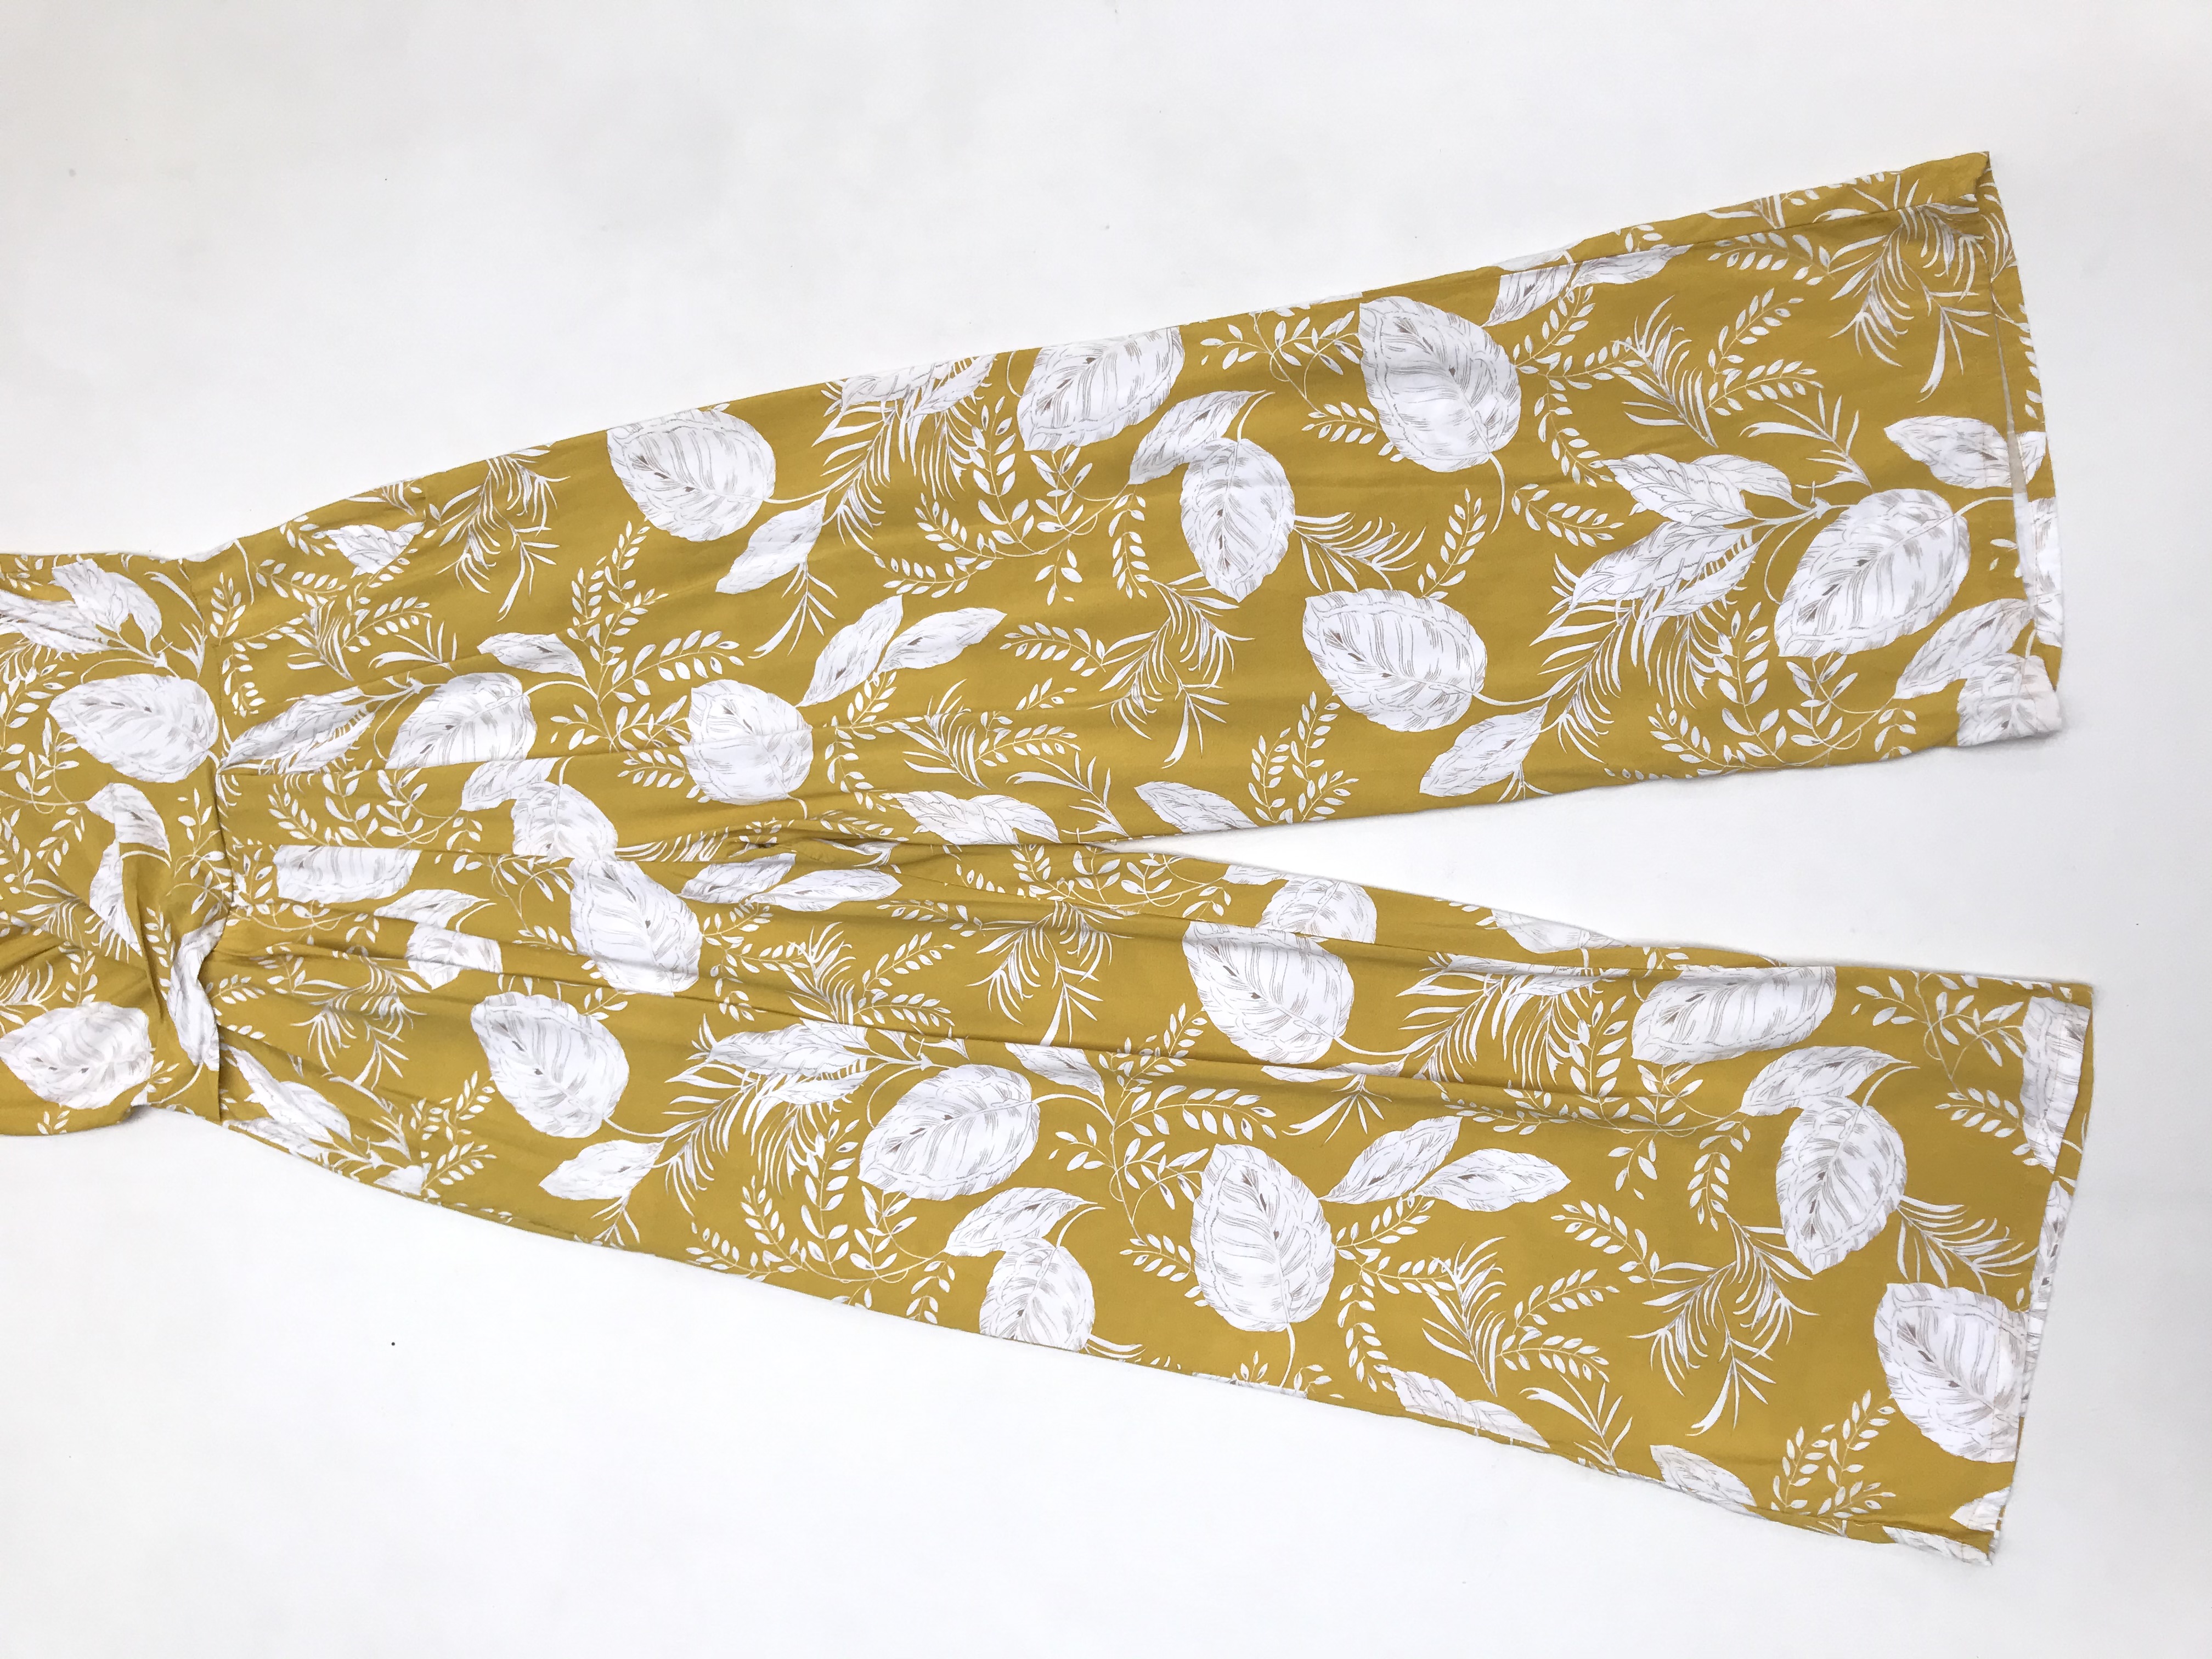 Enterizo Alaniz pantalón amarillo con estampado de hojas blancas, escote cruzado, bolsillos laterales y cierre posterior. Precio original S/ 180